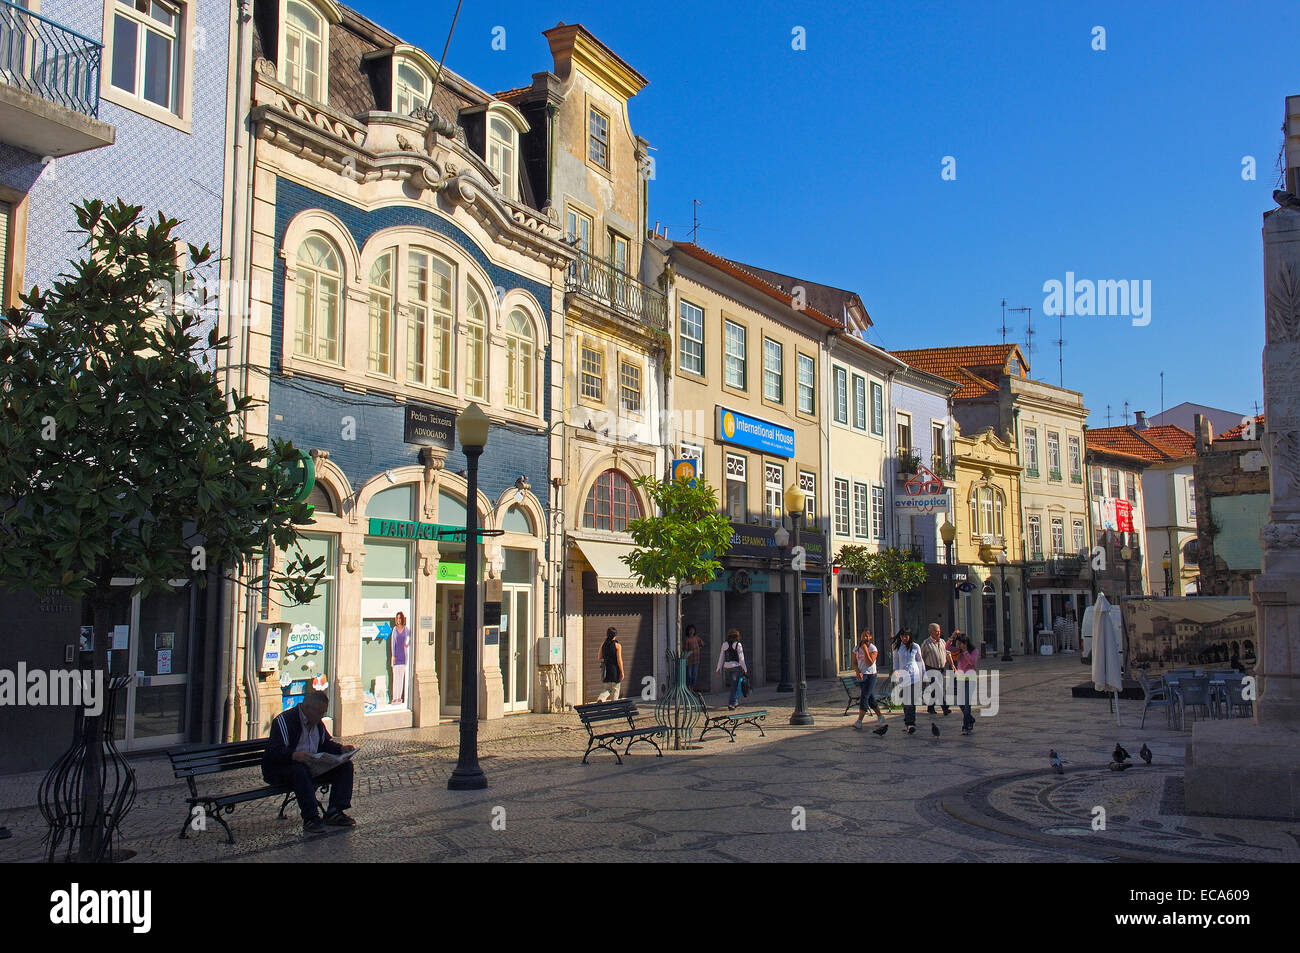 Old town, Aveiro, Beiras region, Portugal, Europe Stock Photo